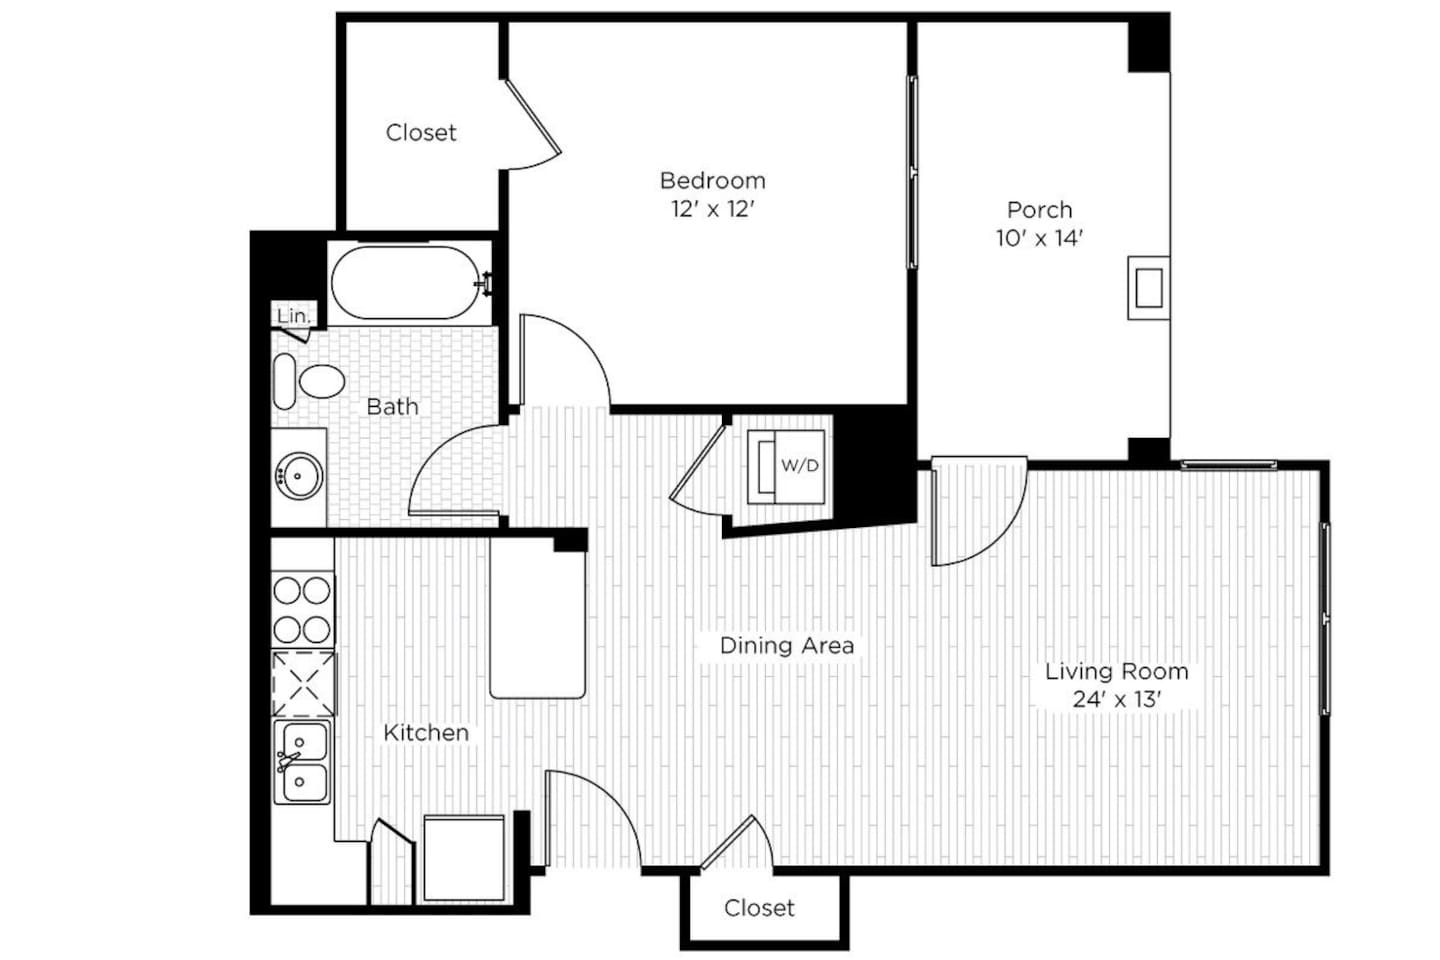 Floorplan diagram for 1CS, showing 1 bedroom